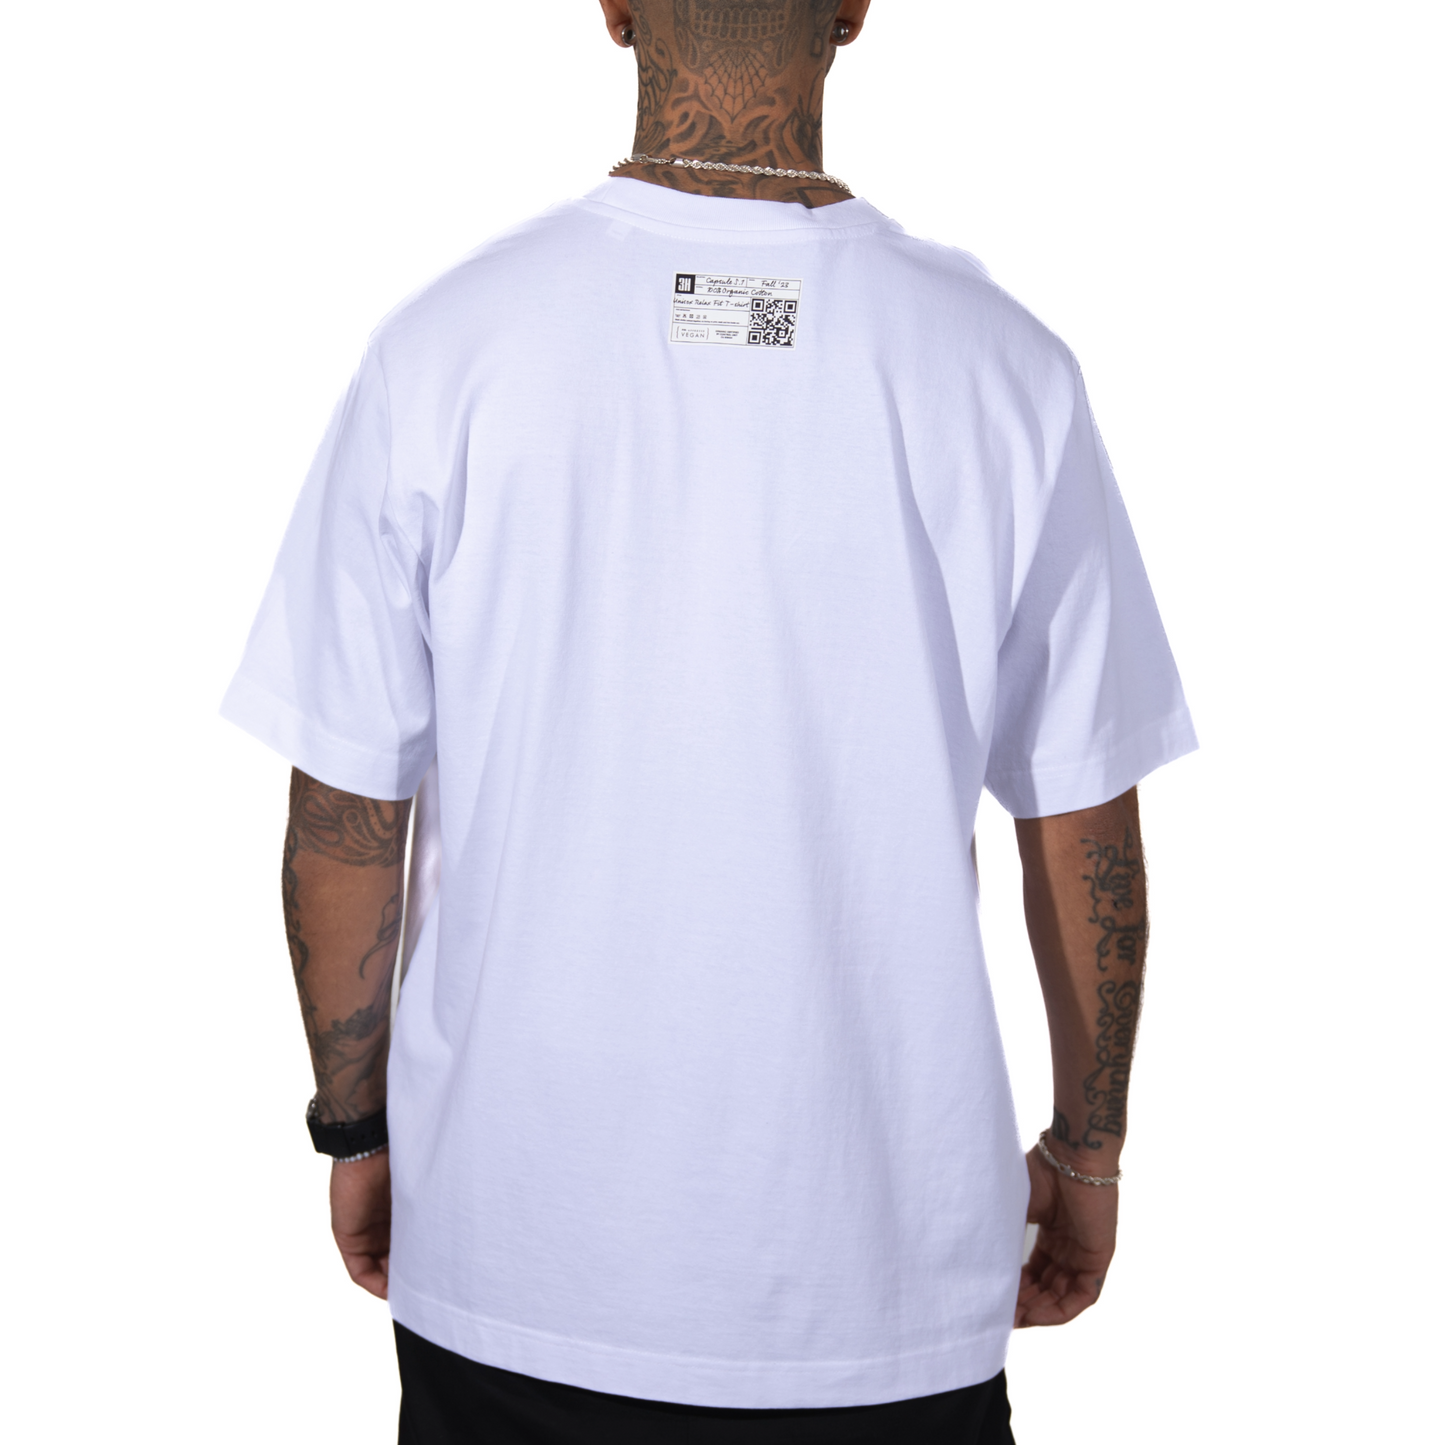 3H Wit oversized T-shirt van 100% biologisch katoen, minimalistisch geborduurd ontwerp